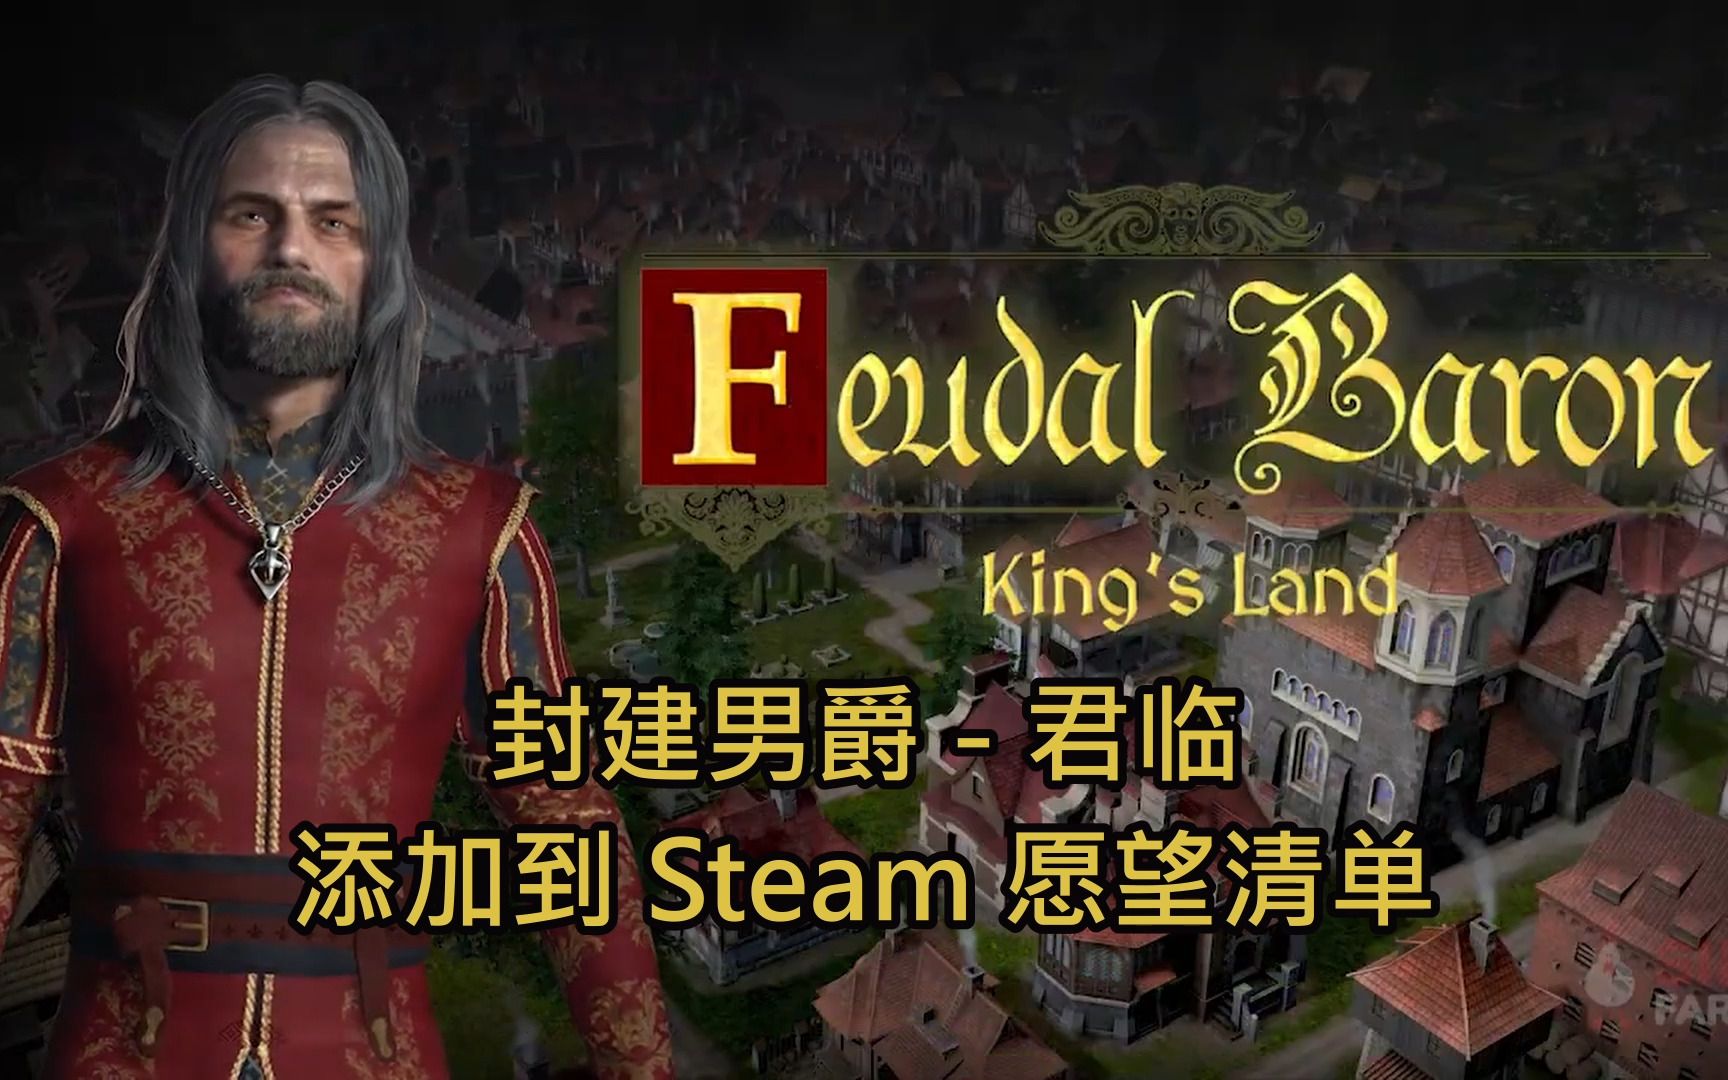 建立一个成功的中世纪定居点，照顾你的公民并做出艰难的决定 - 中世纪城市建造者管理游戏预览预告片 - Feudal Baron: King's Land